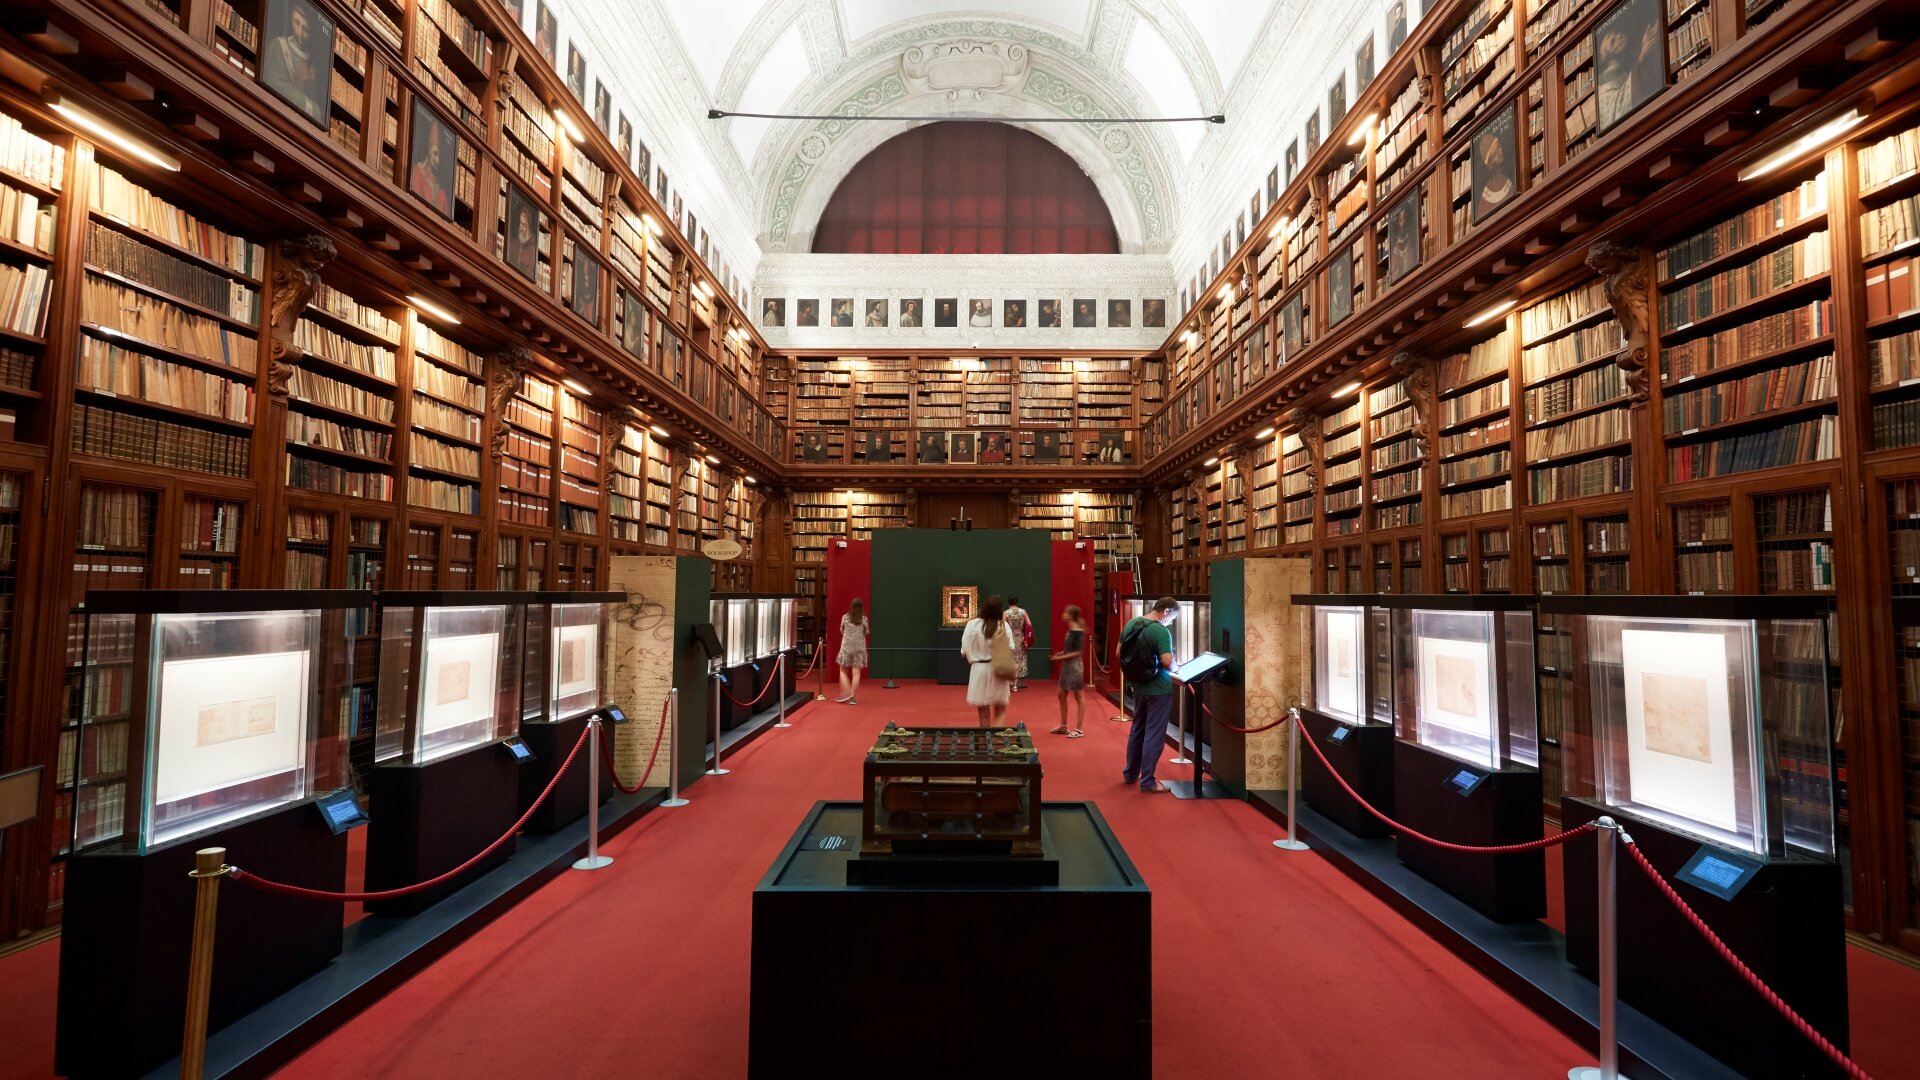 Амброзианская библиотека, книги на полках и люди